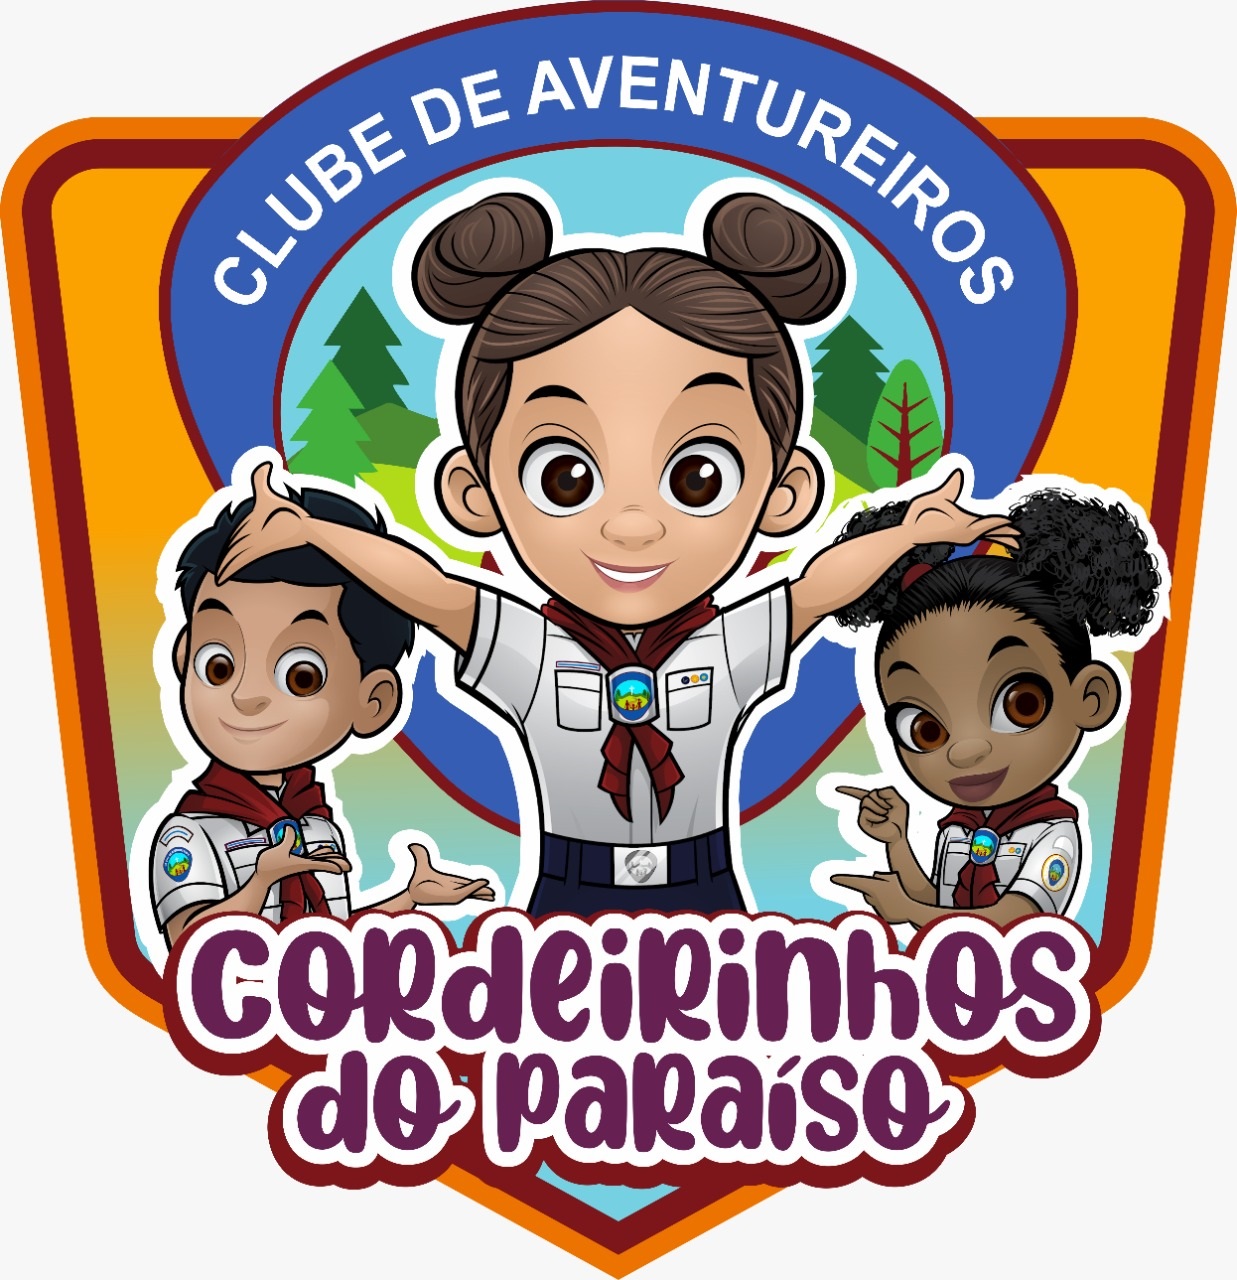 CORDEIRINHOS DO PARAÍSO